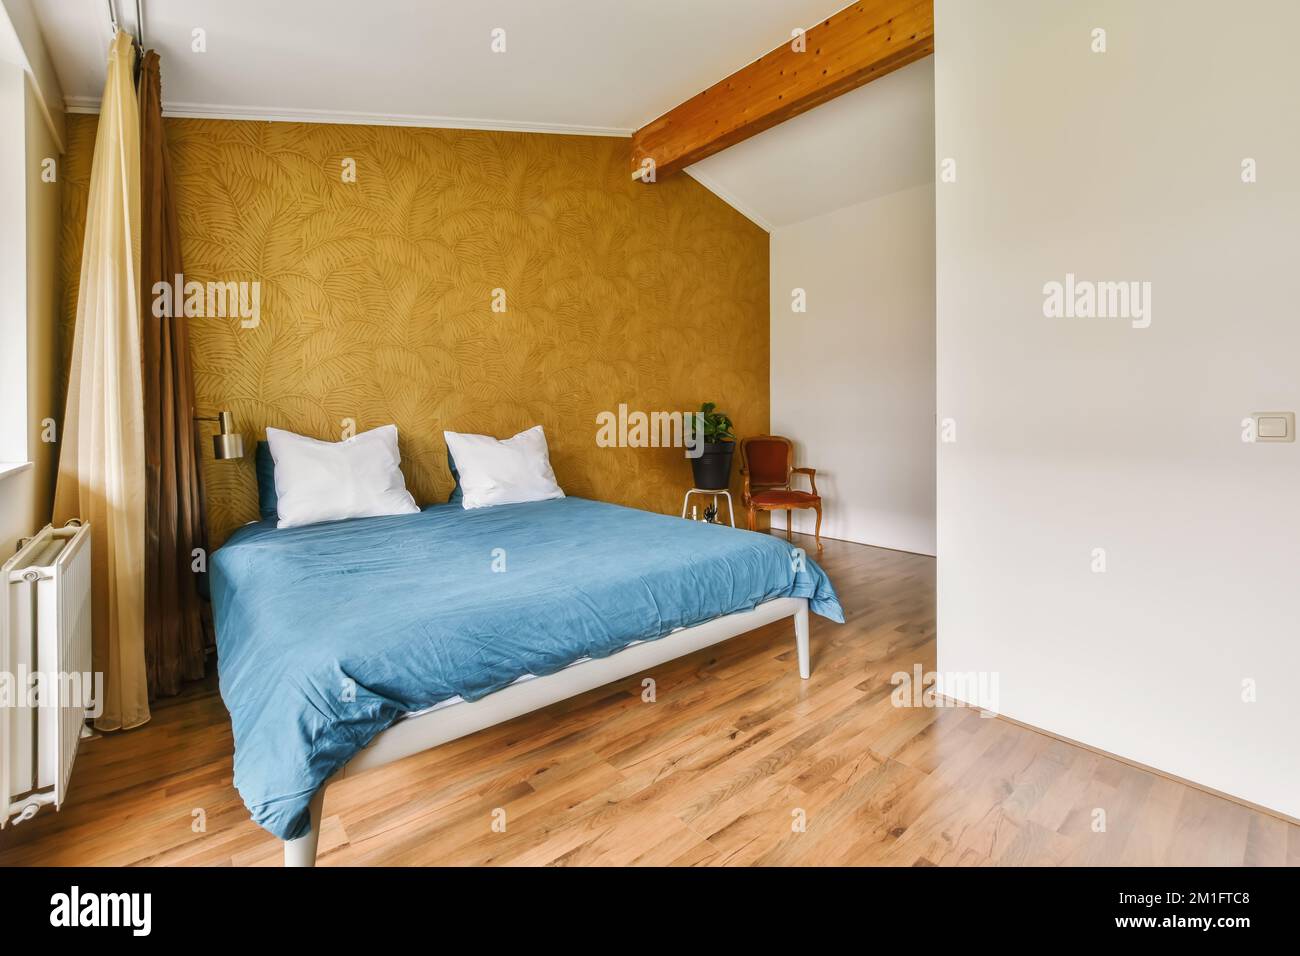 Ein Bett in einem Zimmer mit Holzfußboden und gelber Tapete an den Wänden dahinter ist ein Fenster Stockfoto